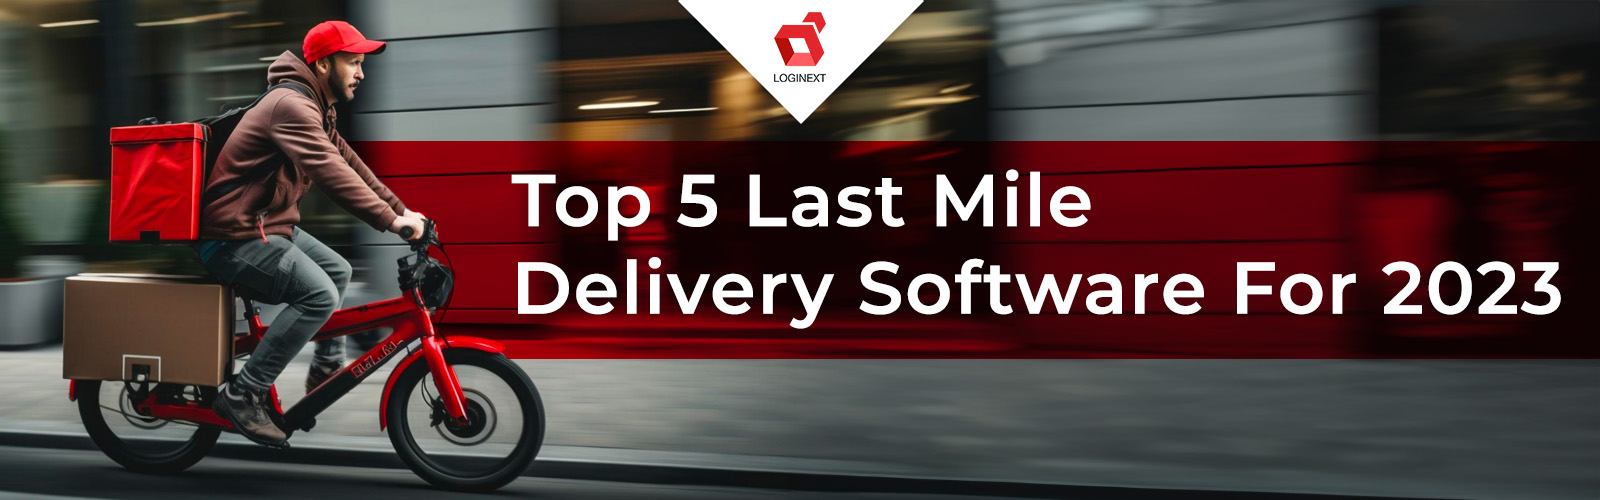 Los 5 mejores softwares de entrega de última milla